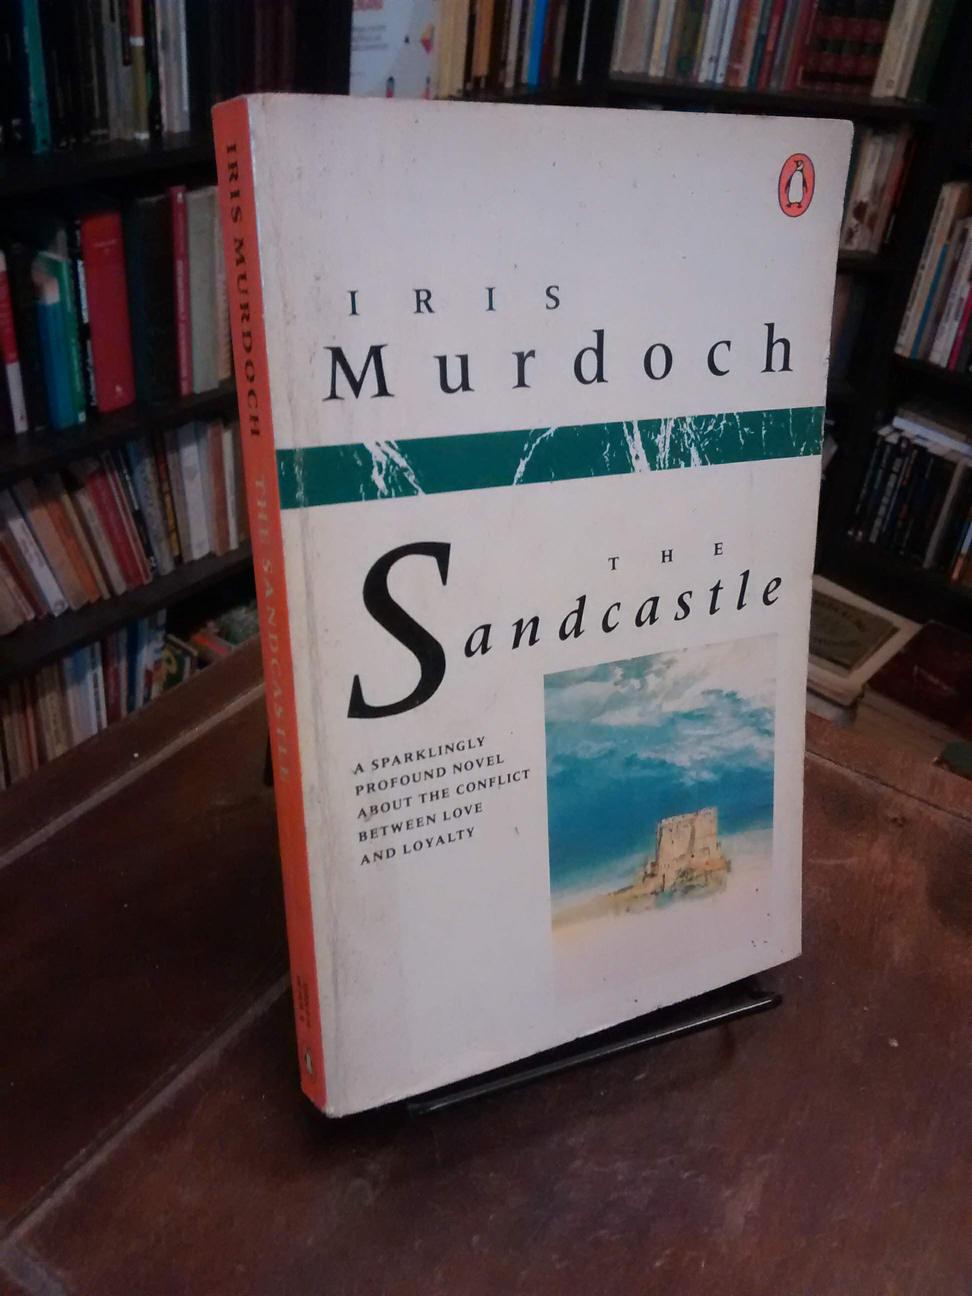 The Sandcastle - Iris Murdoch